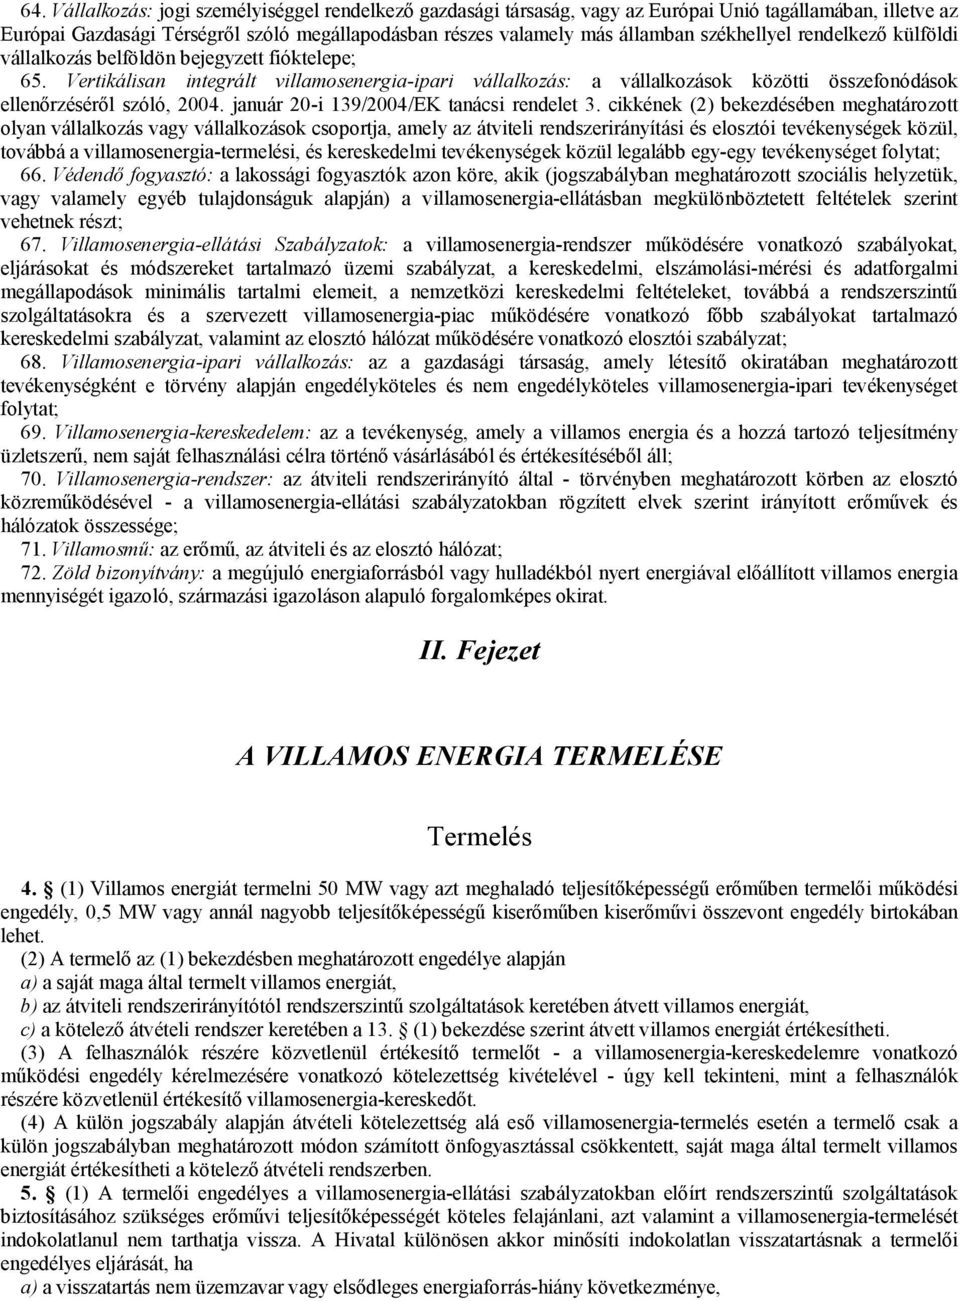 Vertikálisan integrált villamosenergia-ipari vállalkozás: a vállalkozások közötti összefonódások ellenőrzéséről szóló, 2004. január 20-i 139/2004/EK tanácsi rendelet 3.